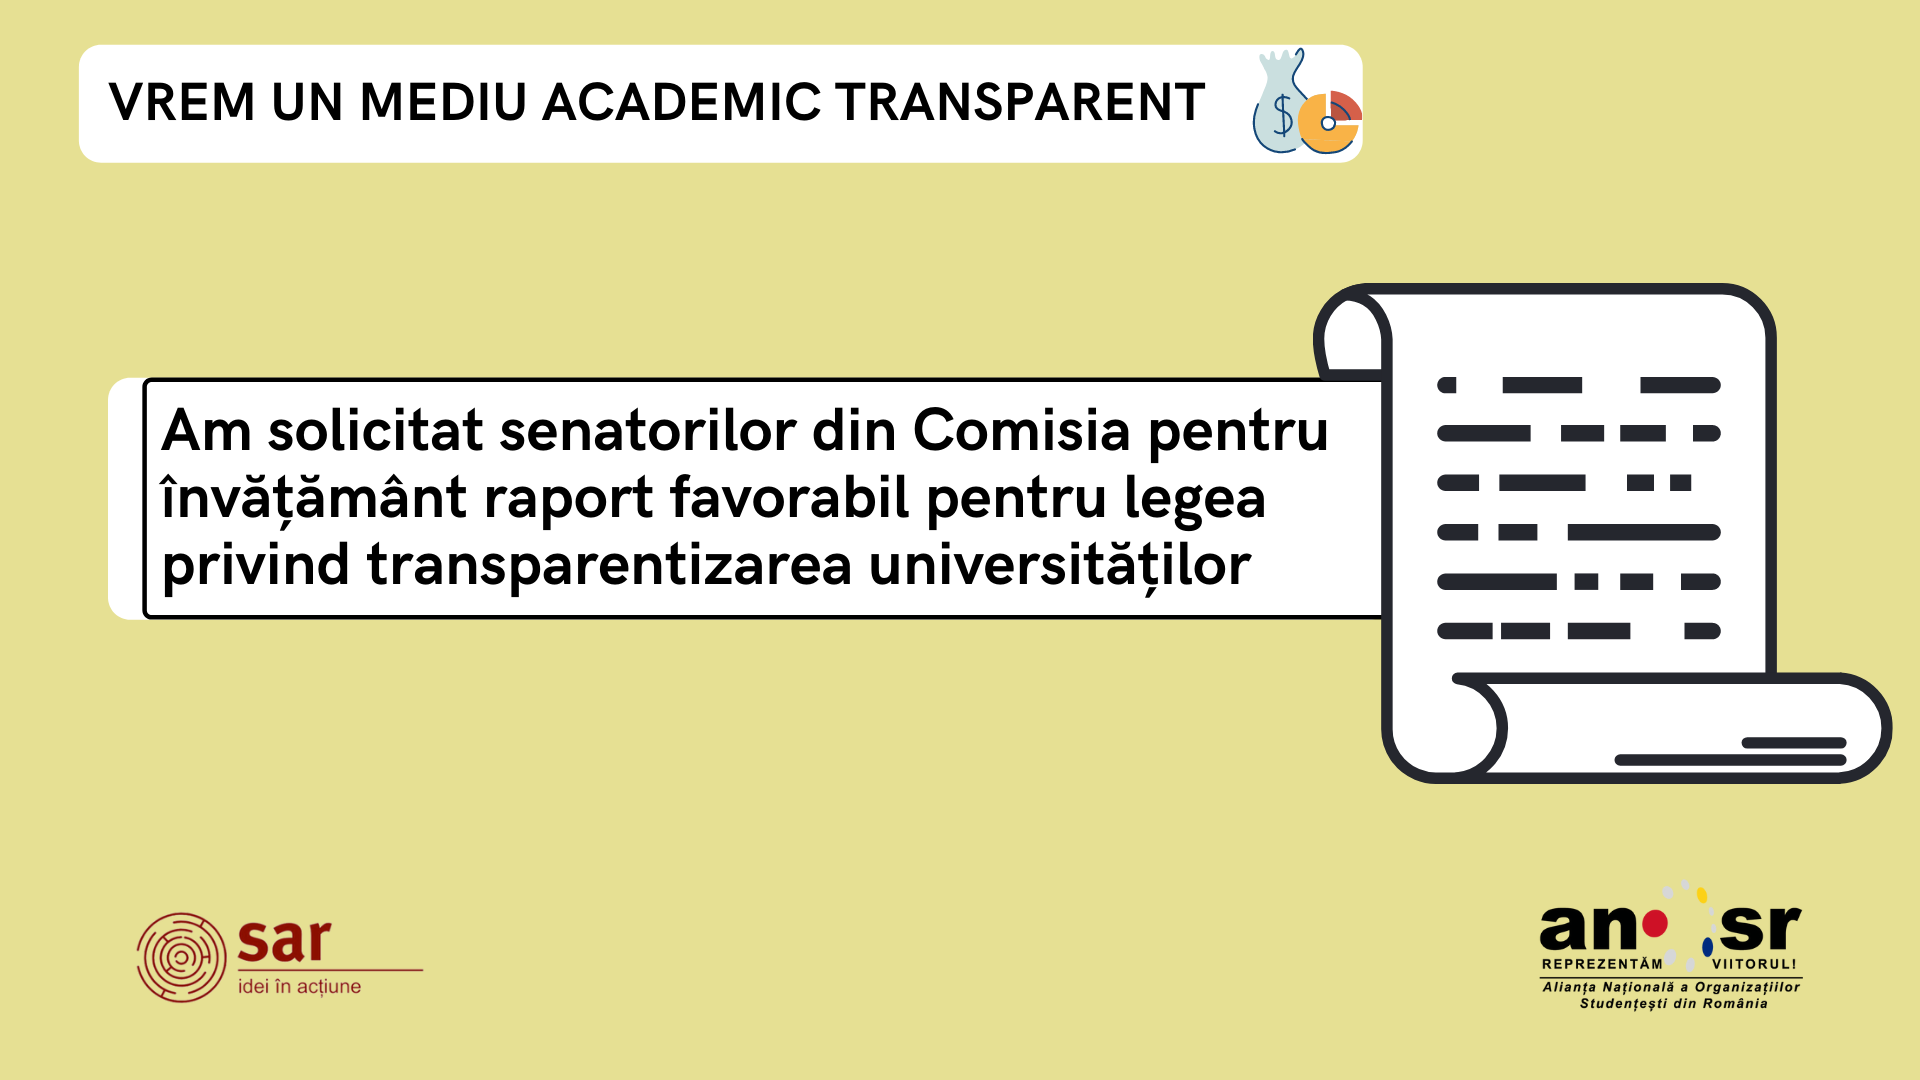 SAR și ANOSR solicită Comisiei pentru învățământ din Senat raport favorabil pentru legea privind transparența în universități